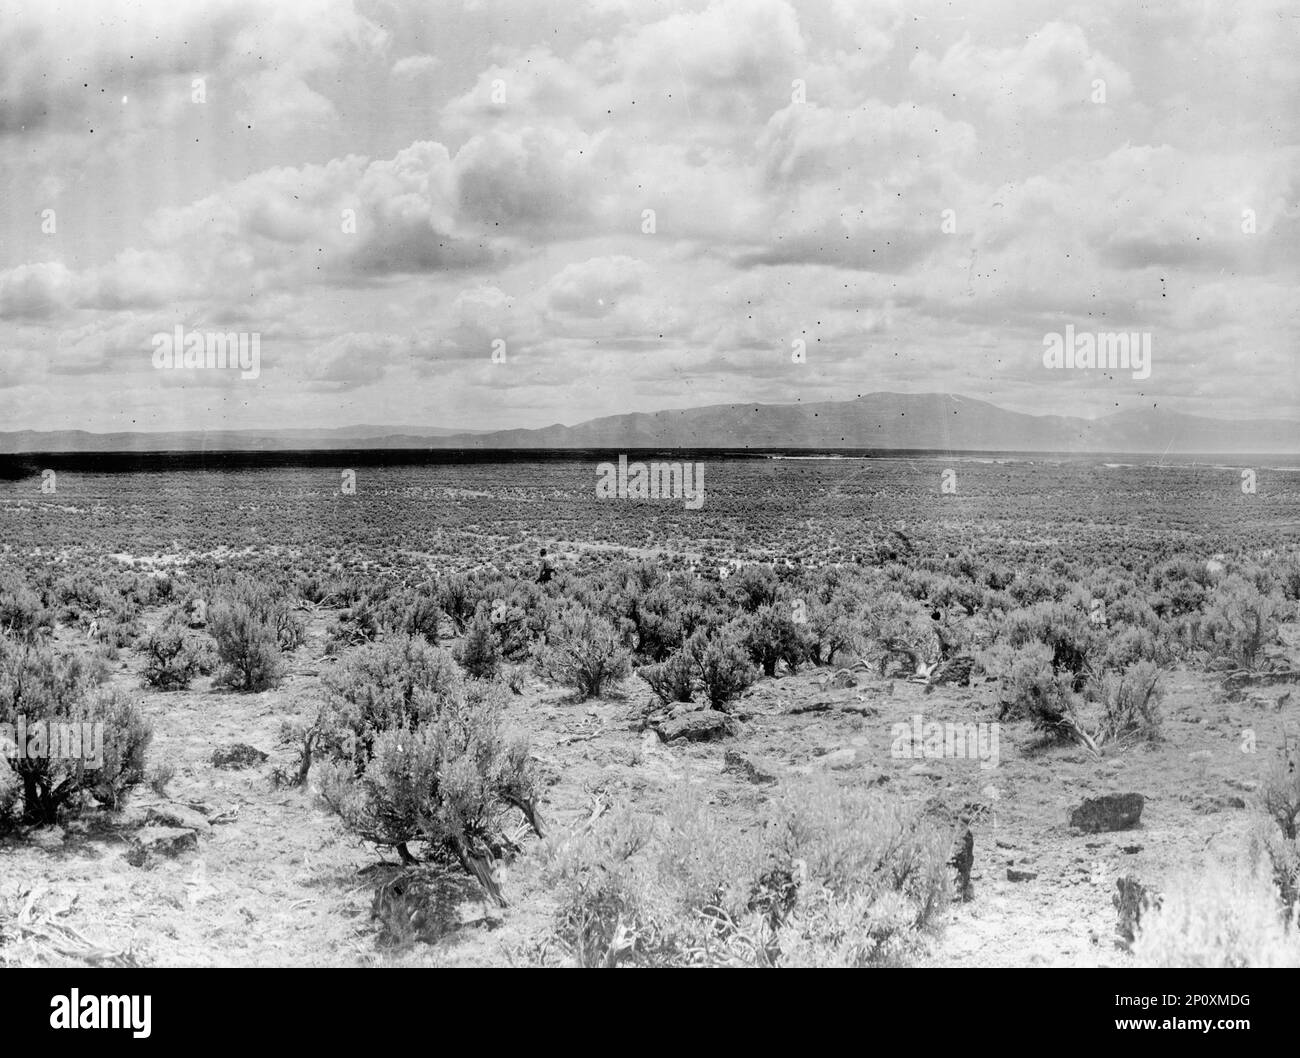 Progetto Minidoka - USA Ufficio di recupero. Deserto di Minidoka nel 1905, prima dell'irrigazione, 1912. Il progetto Minidoka era una serie di lavori pubblici realizzati per controllare il flusso del fiume Snake nel Wyoming e nell'Idaho, fornendo acqua di irrigazione alle terre agricole dell'Idaho. Foto Stock